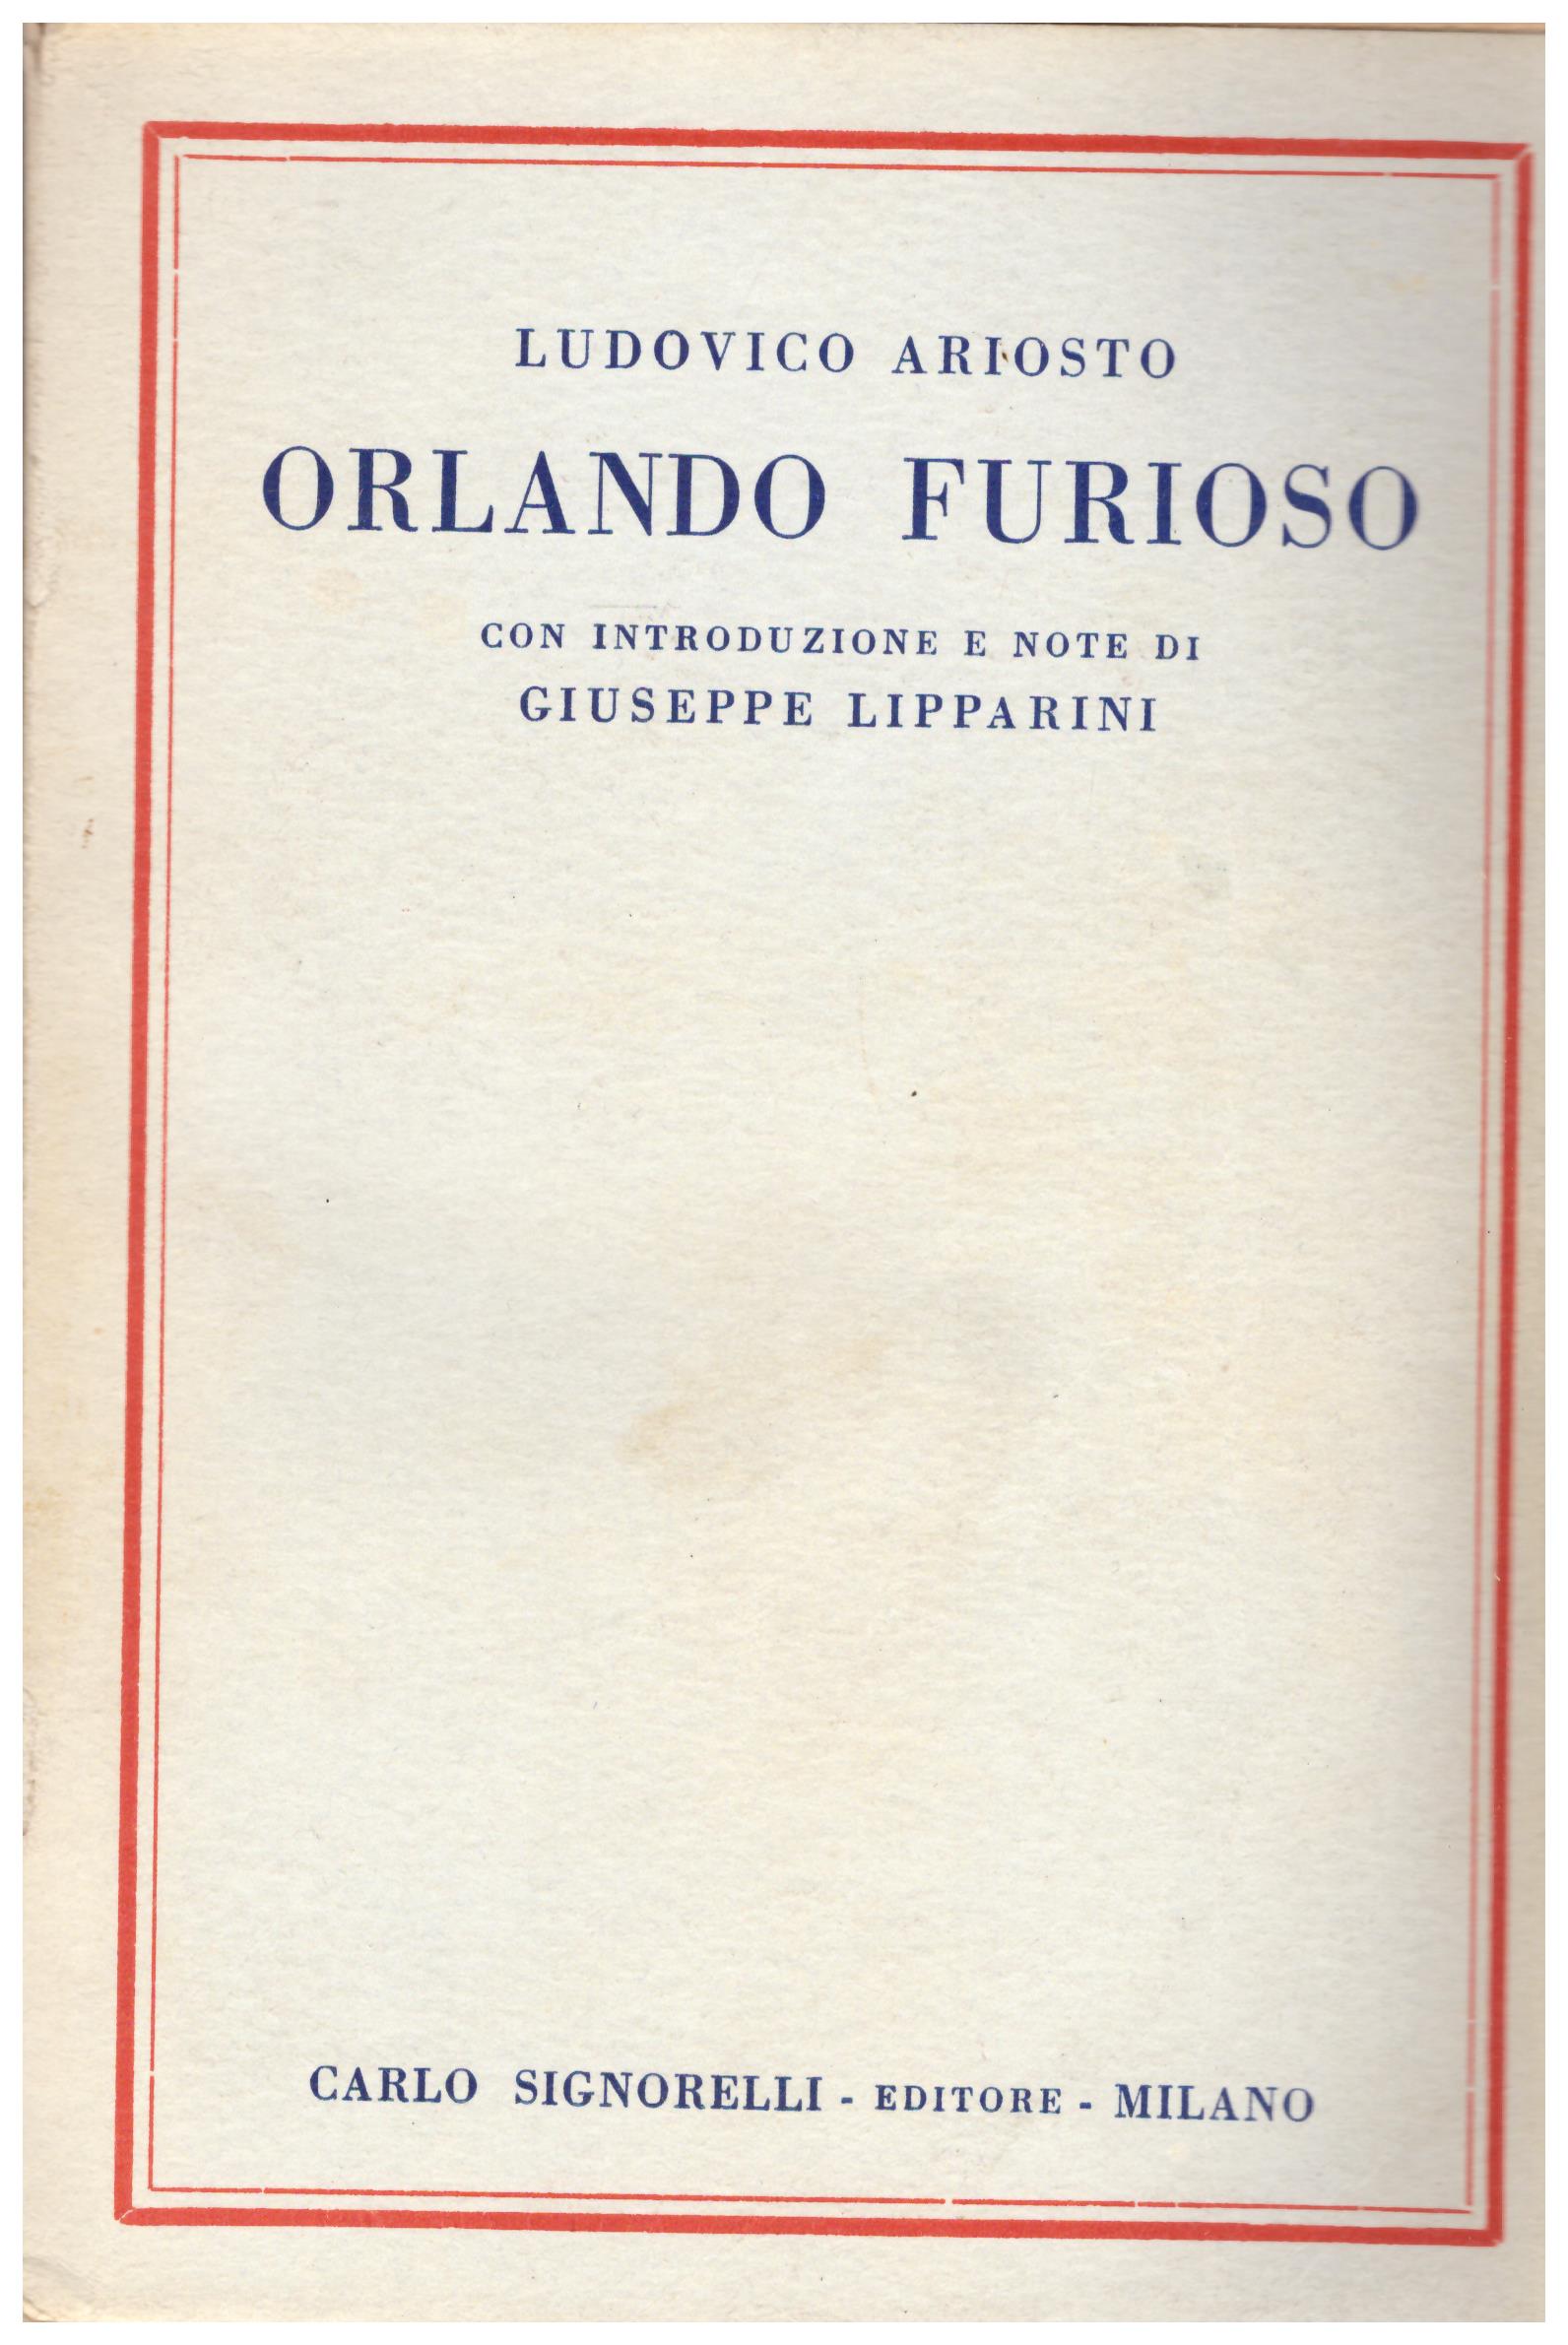 Titolo: Orlando furioso    Autore: Ludovico Ariosto, con introduzione e note di Giuseppe Lipparini    Editore: Carlo Signorelli, Milano